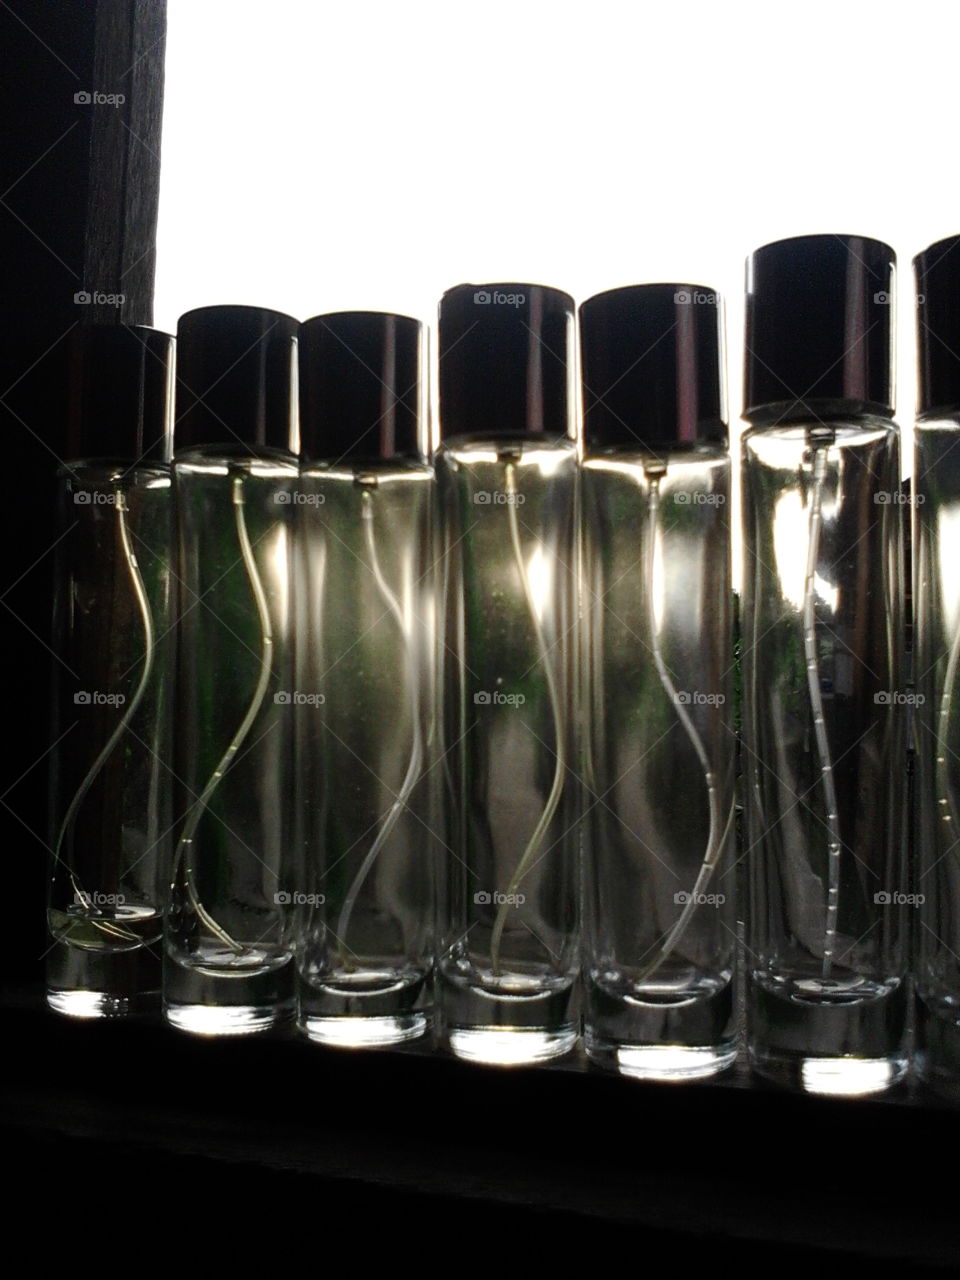 unique bottle of perfume